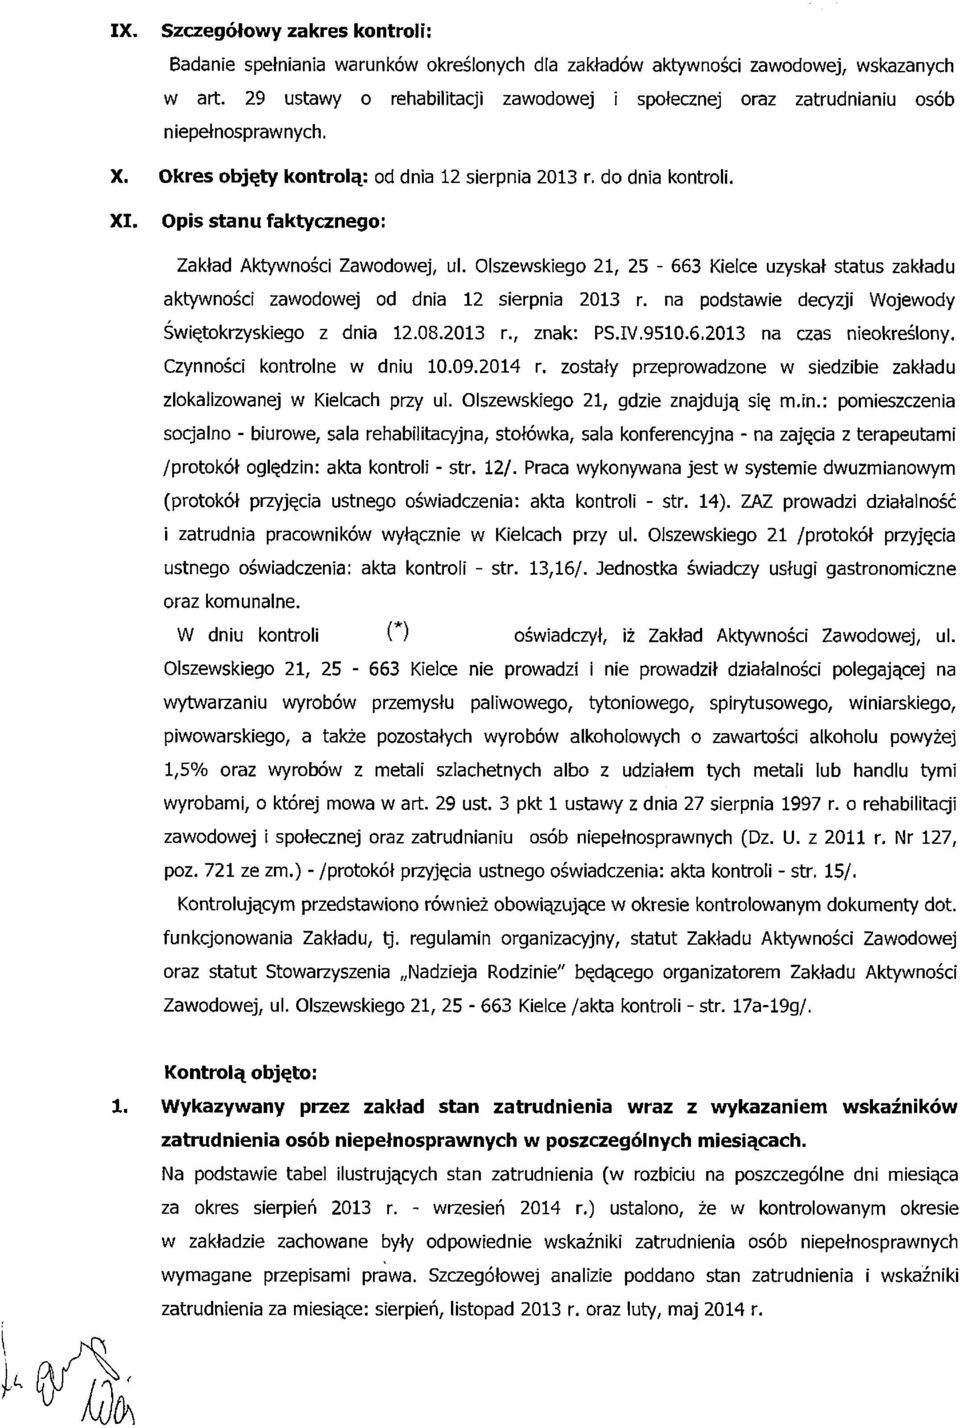 Opis stanu faktycznego: Zakład Aktywności Zawodowej, ul. Olszewskiego 21, 25-663 Kielce uzyskał status zakładu aktywności zawodowej od dnia 12 sierpnia 2013 r.